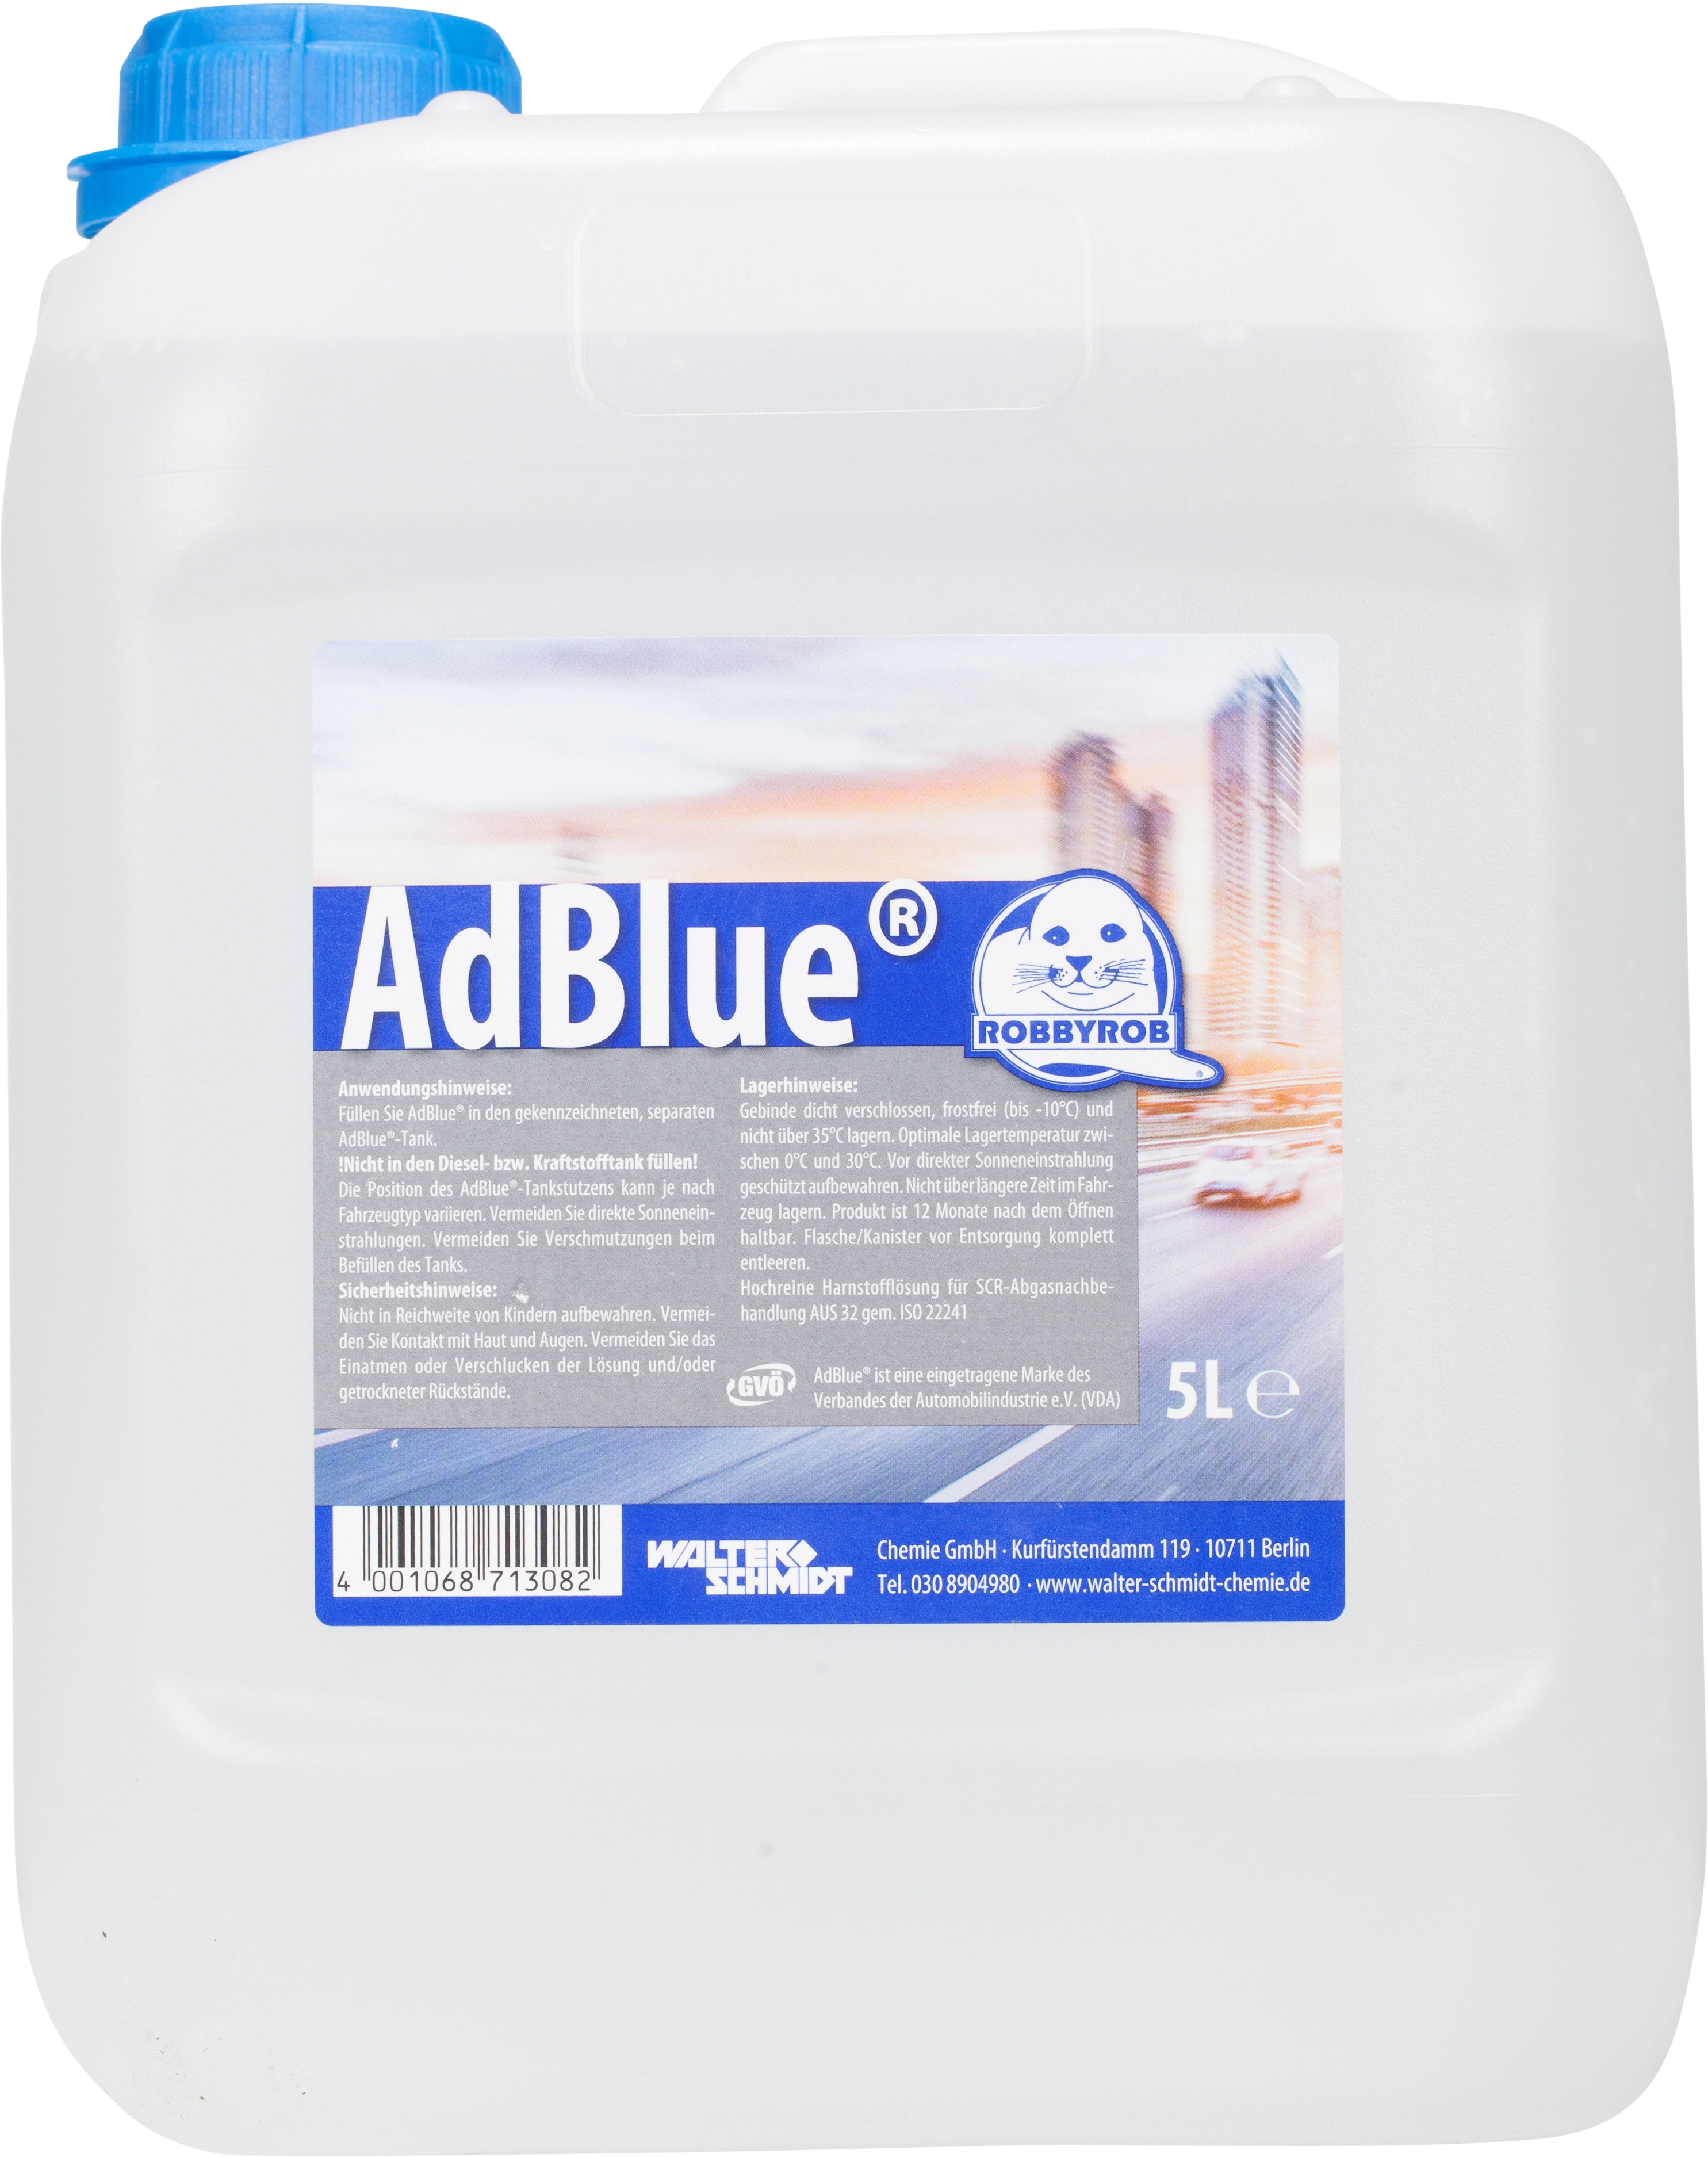 AdBlue® im 60x10 l Kanister